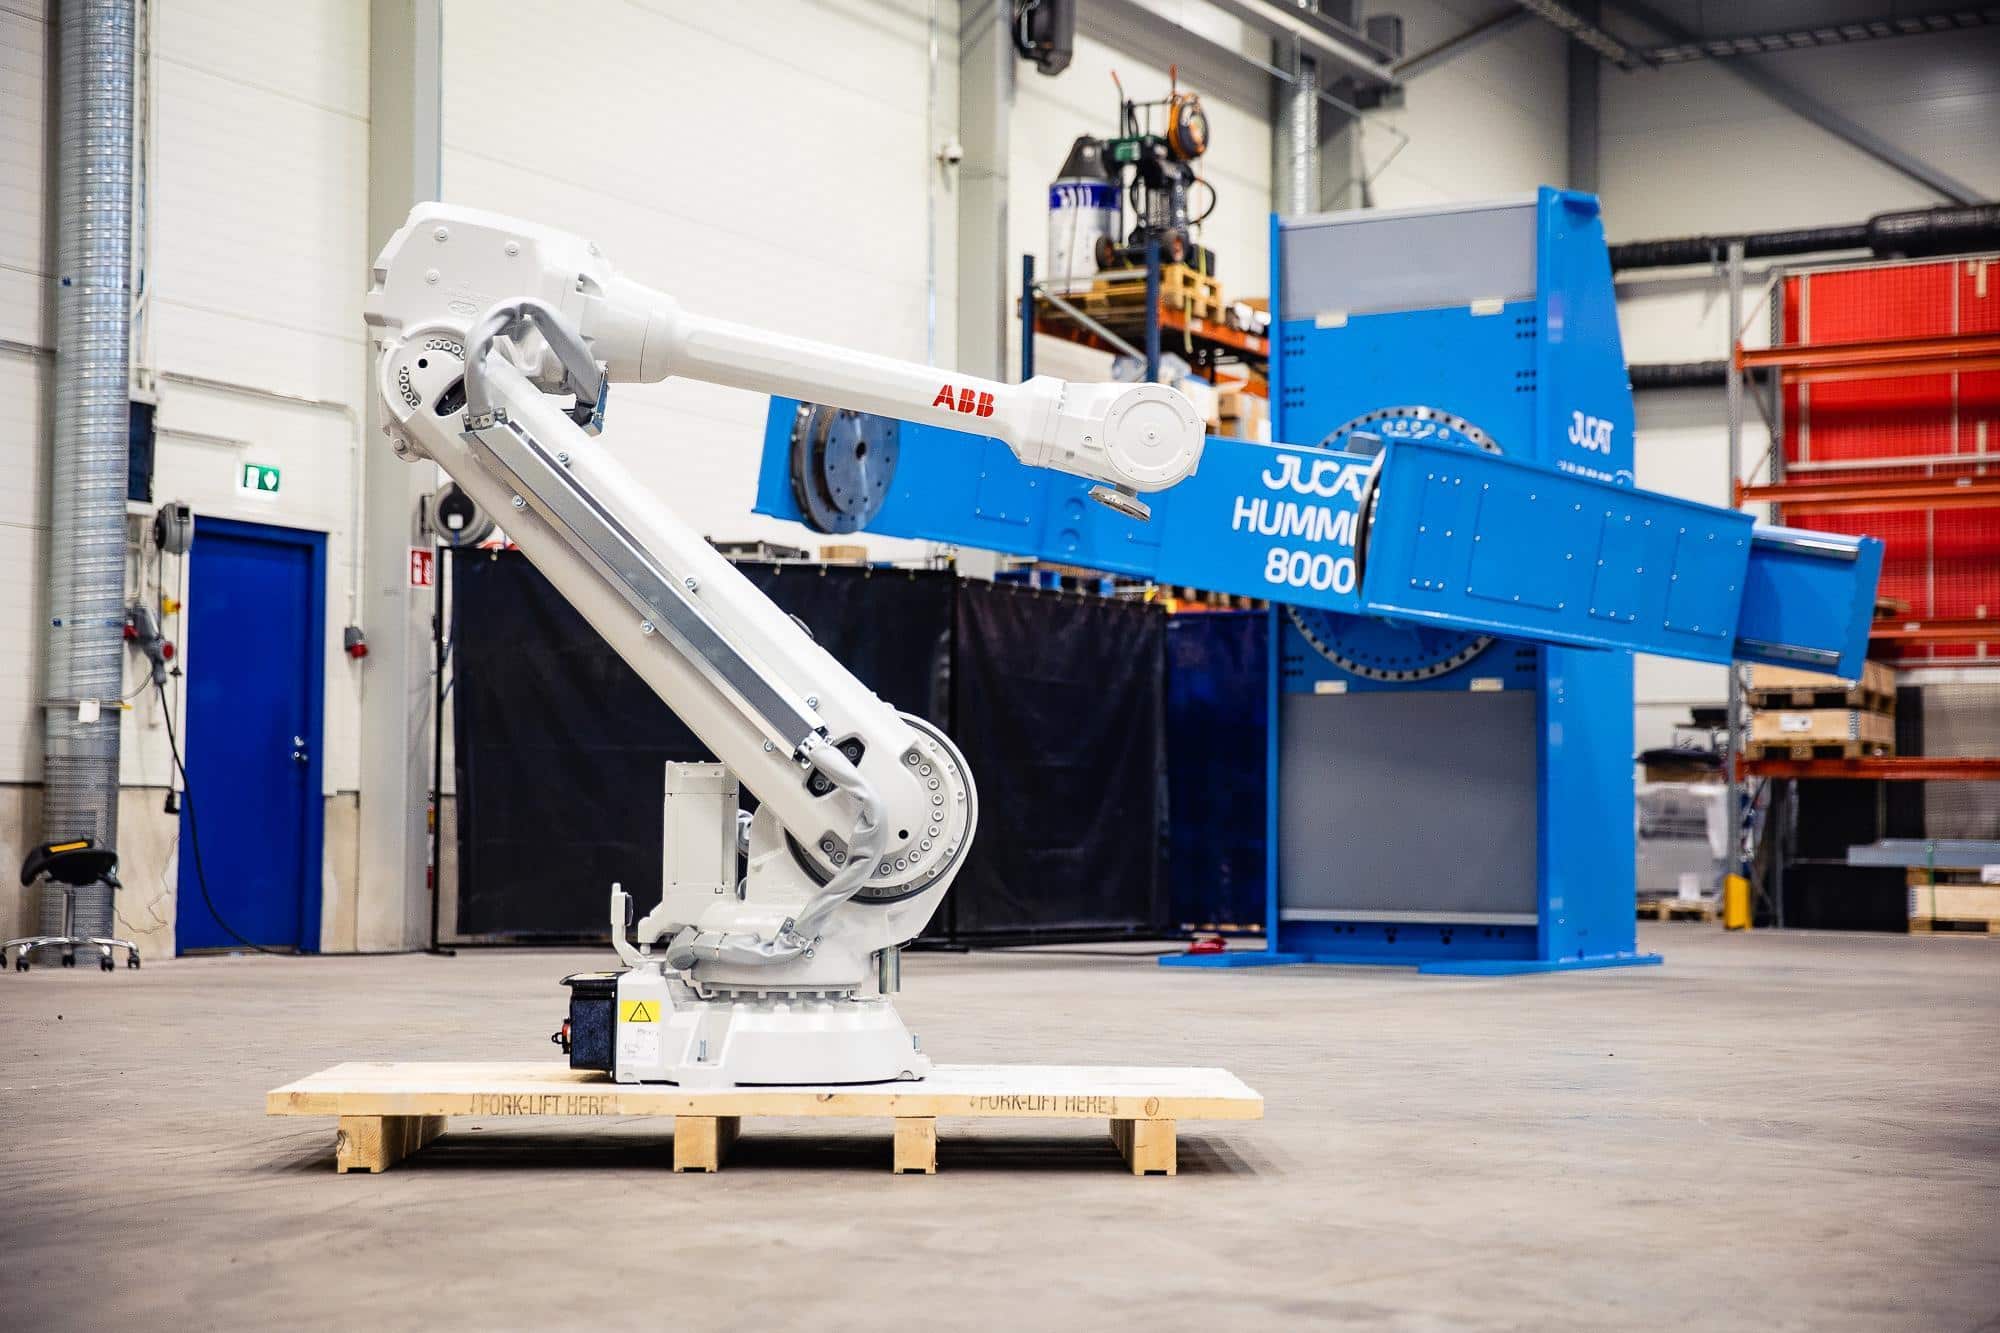 Jucatilla kolme suurta robotiikkaprojektia – monipuoliset kokonaisuudet ovat kasvava trendi